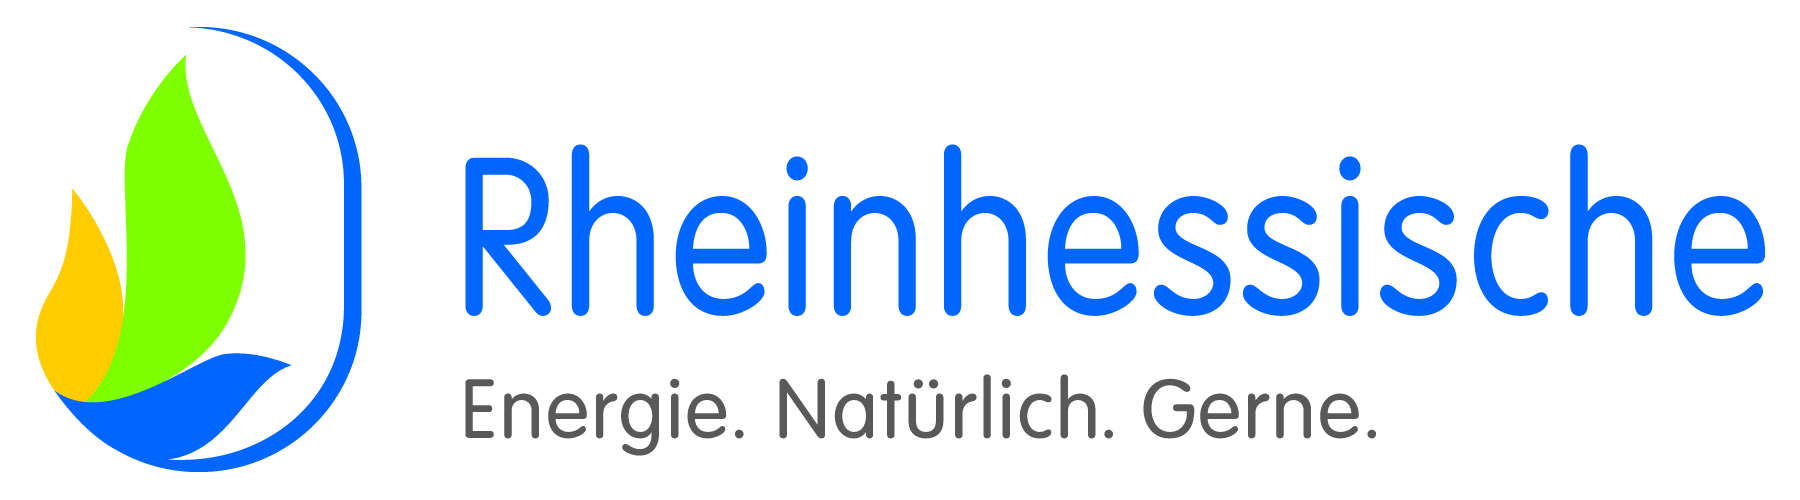 Rheinhessische_Logo_4c.jpg